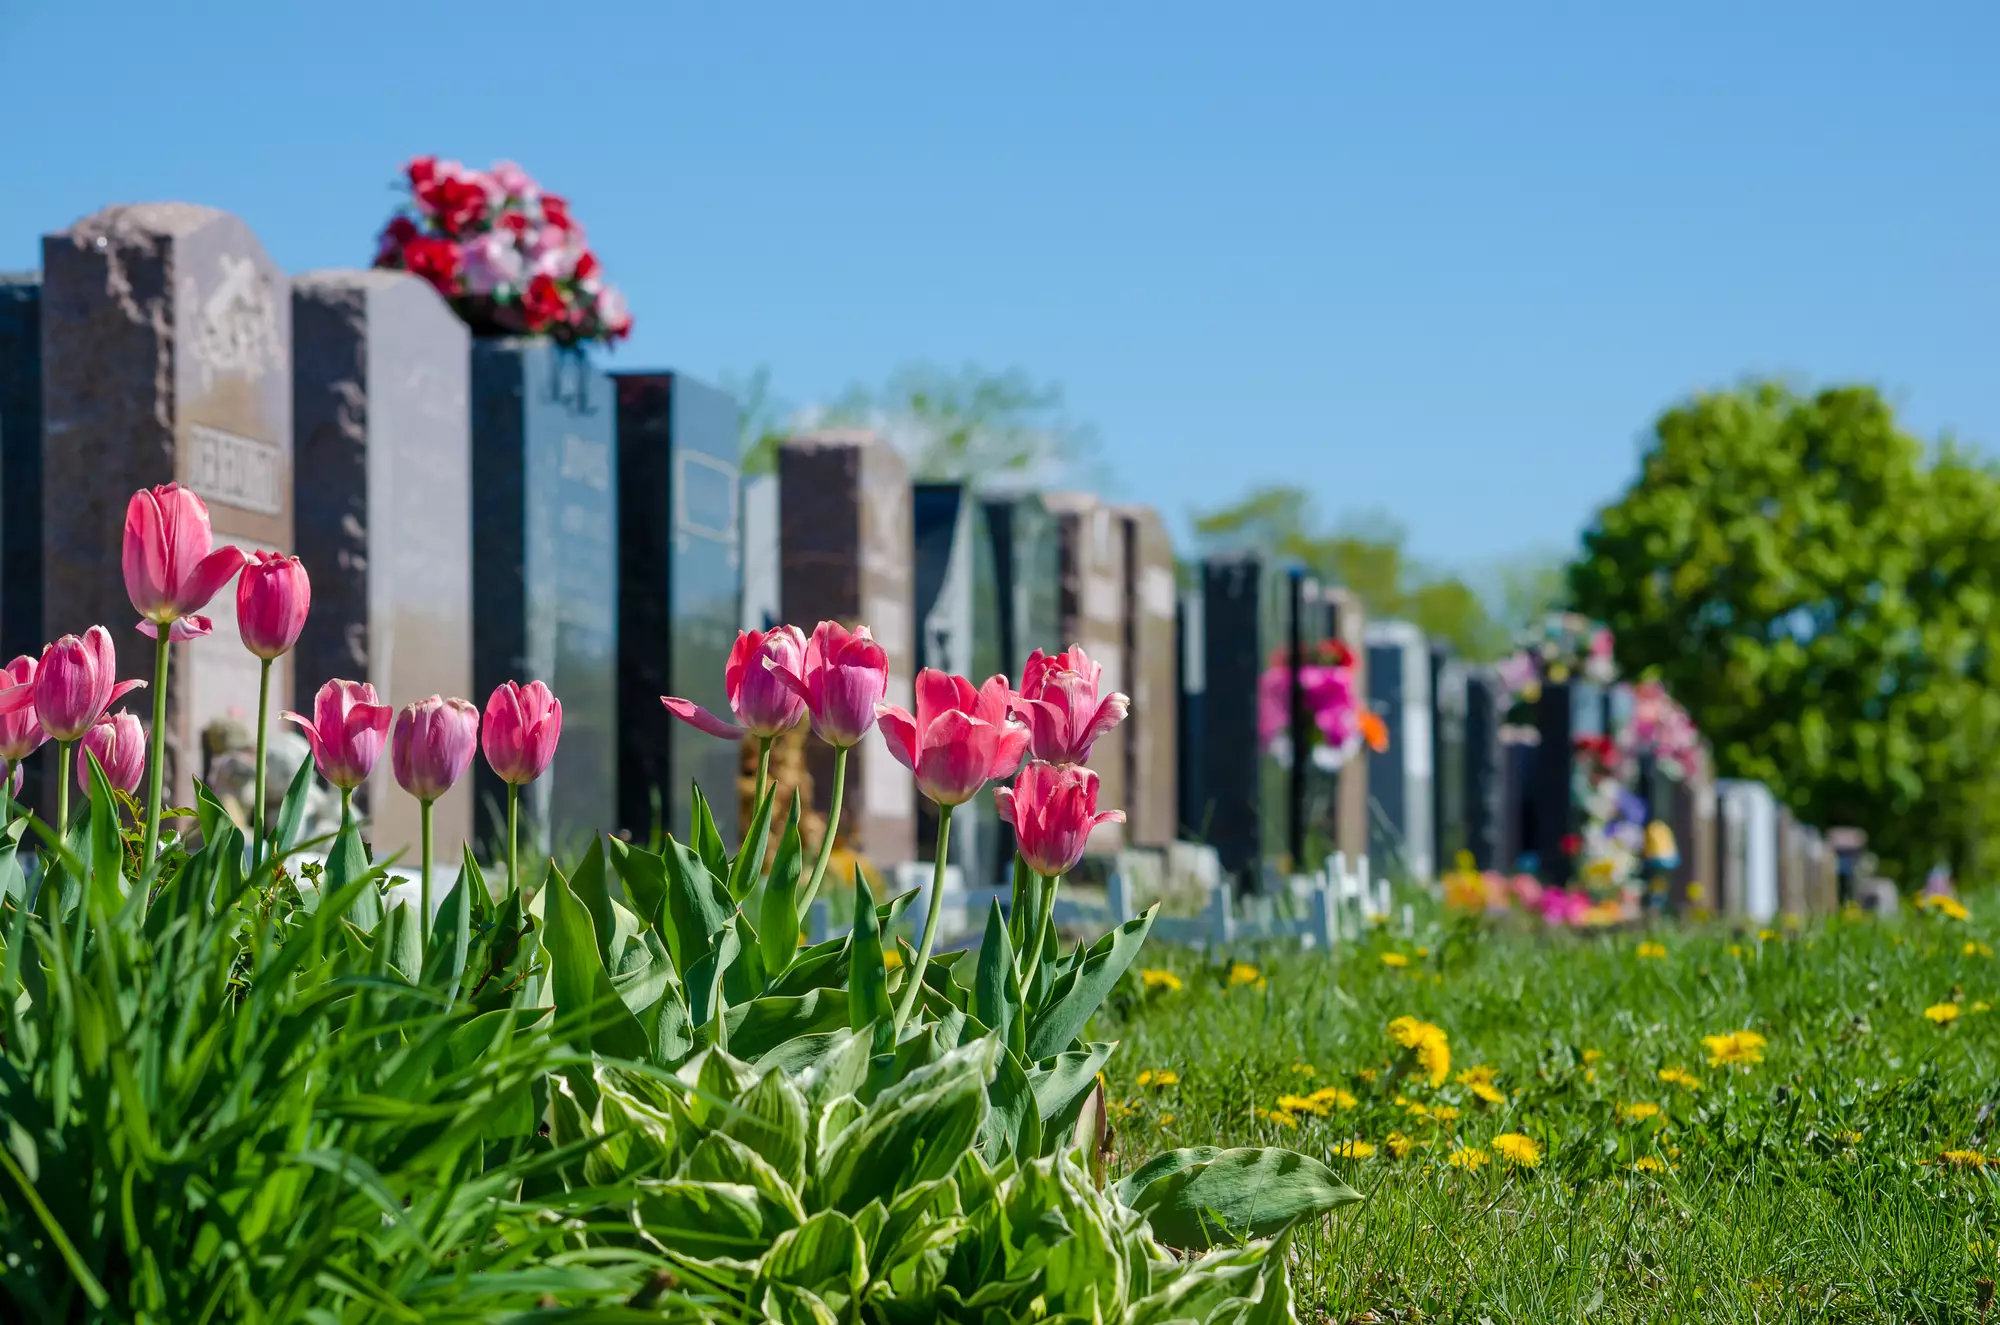 14 марта нужно пойти на кладбище и помянуть почивших близких